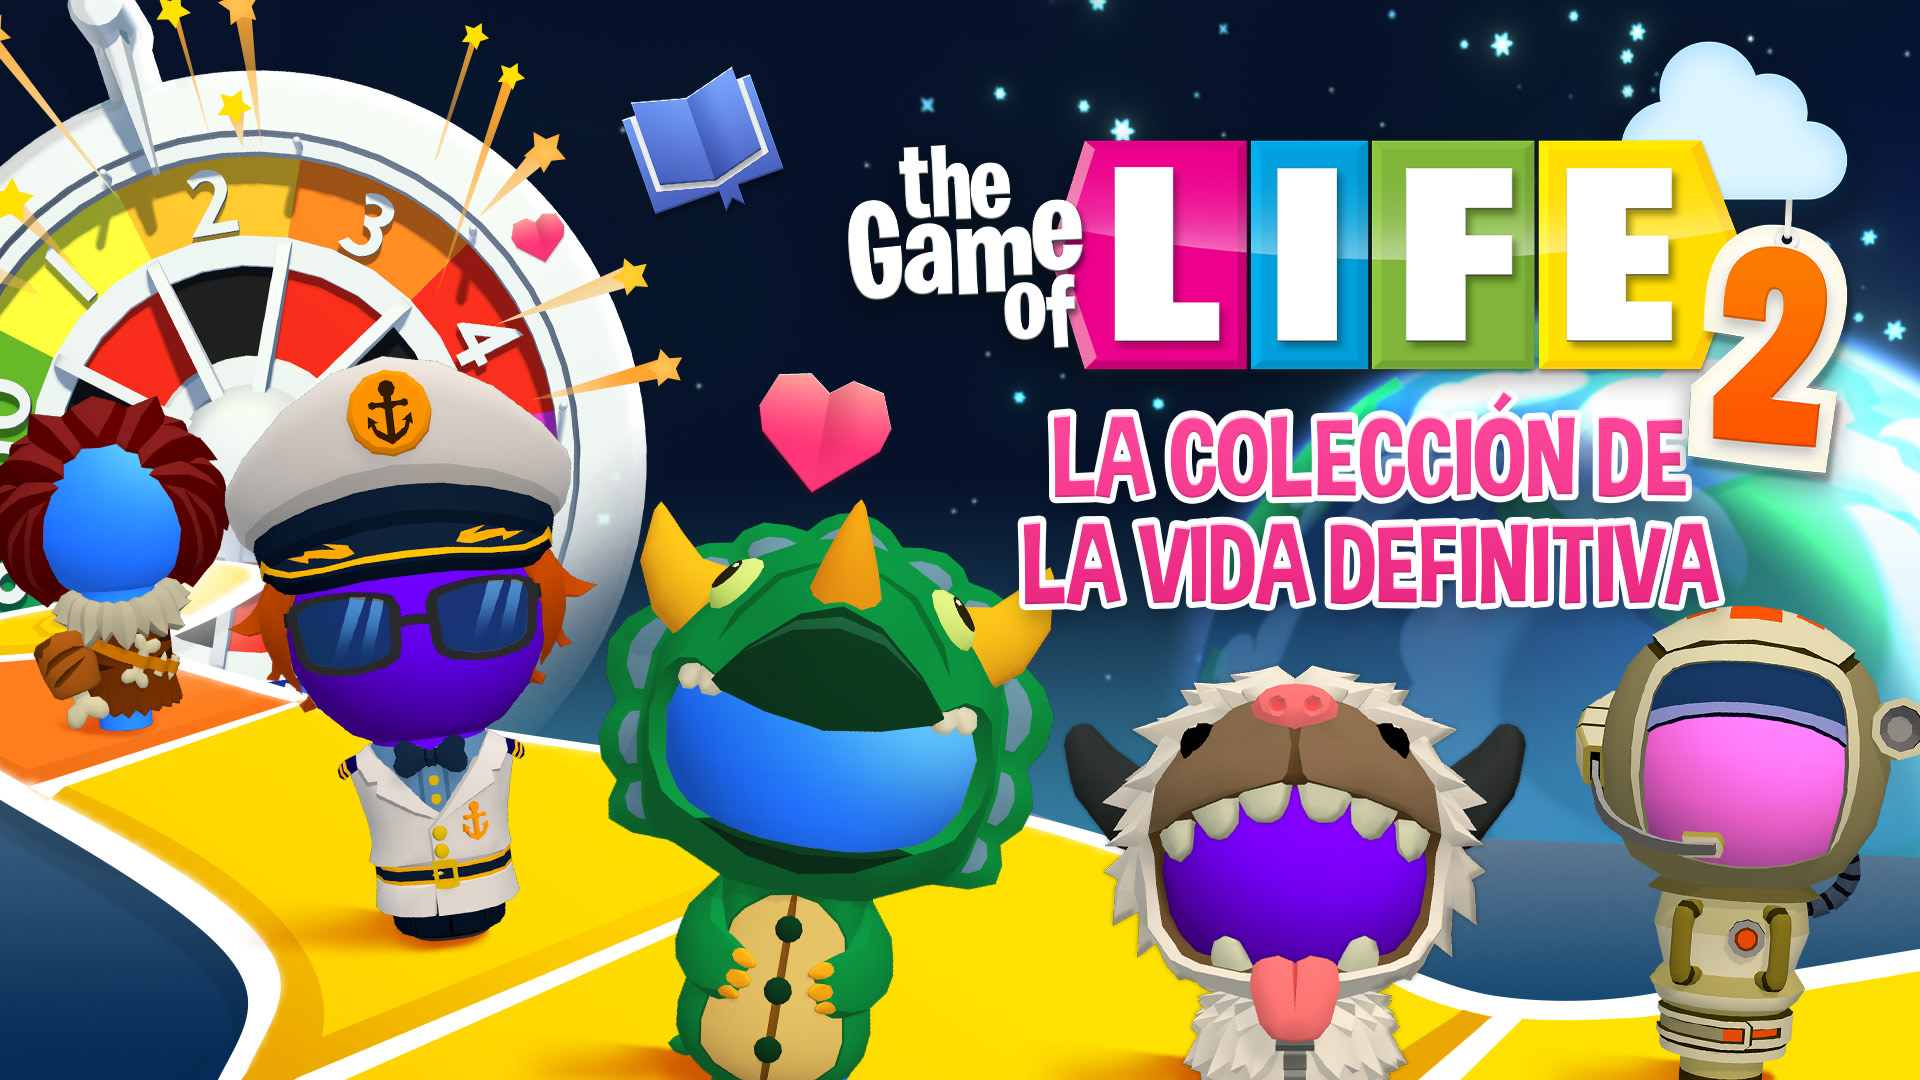 THE GAME OF LIFE 2 - Coleccióne de ka Vida Definitiva